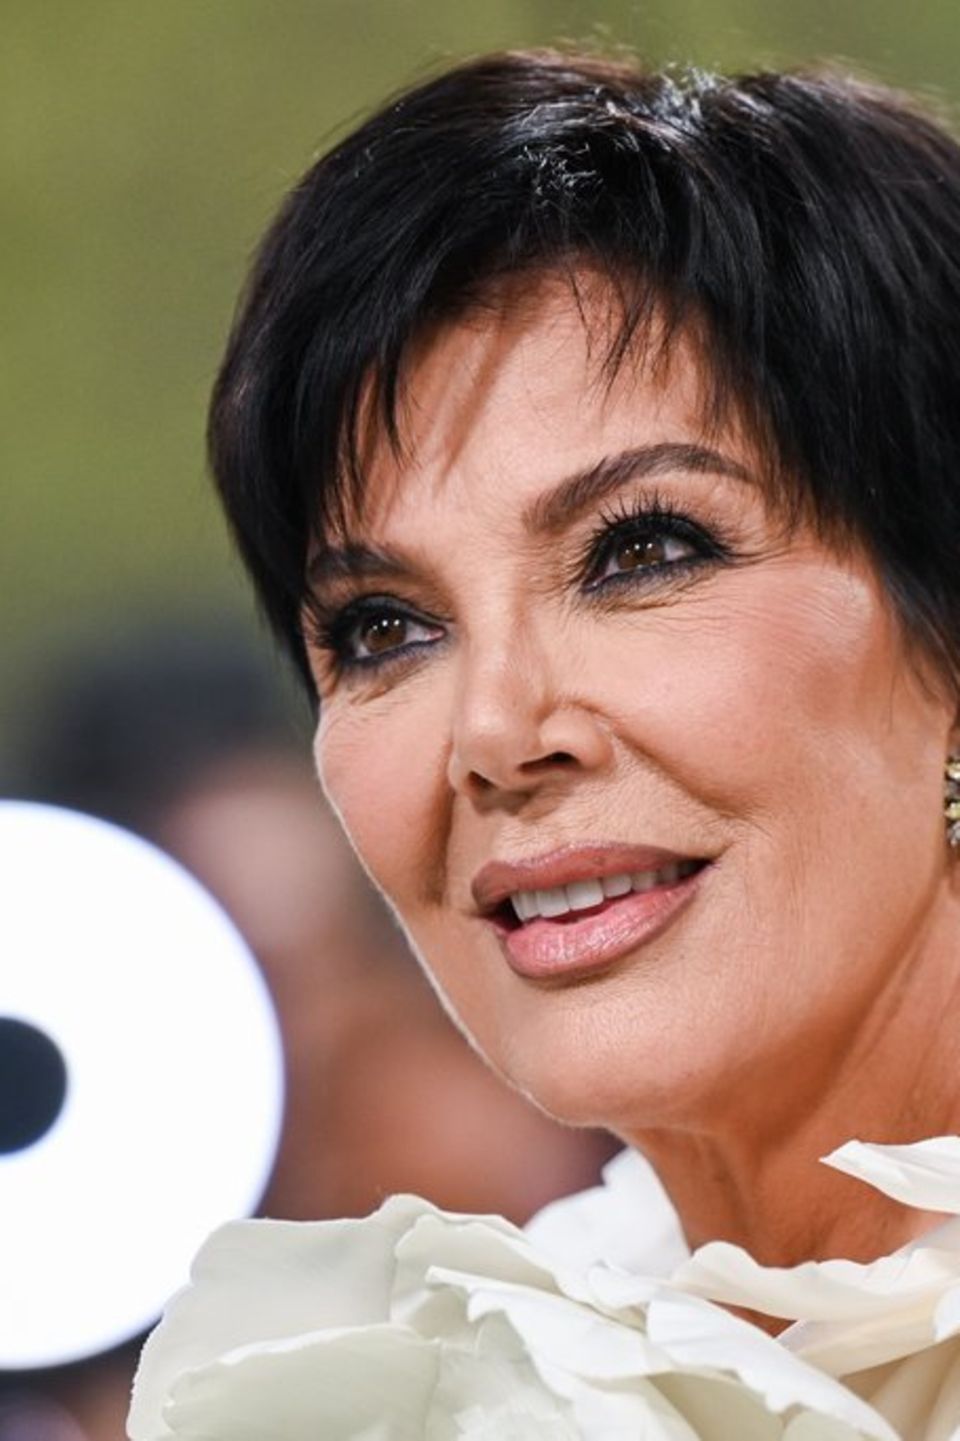 Bei Kris Jenner wurde ein Tumor gefunden.